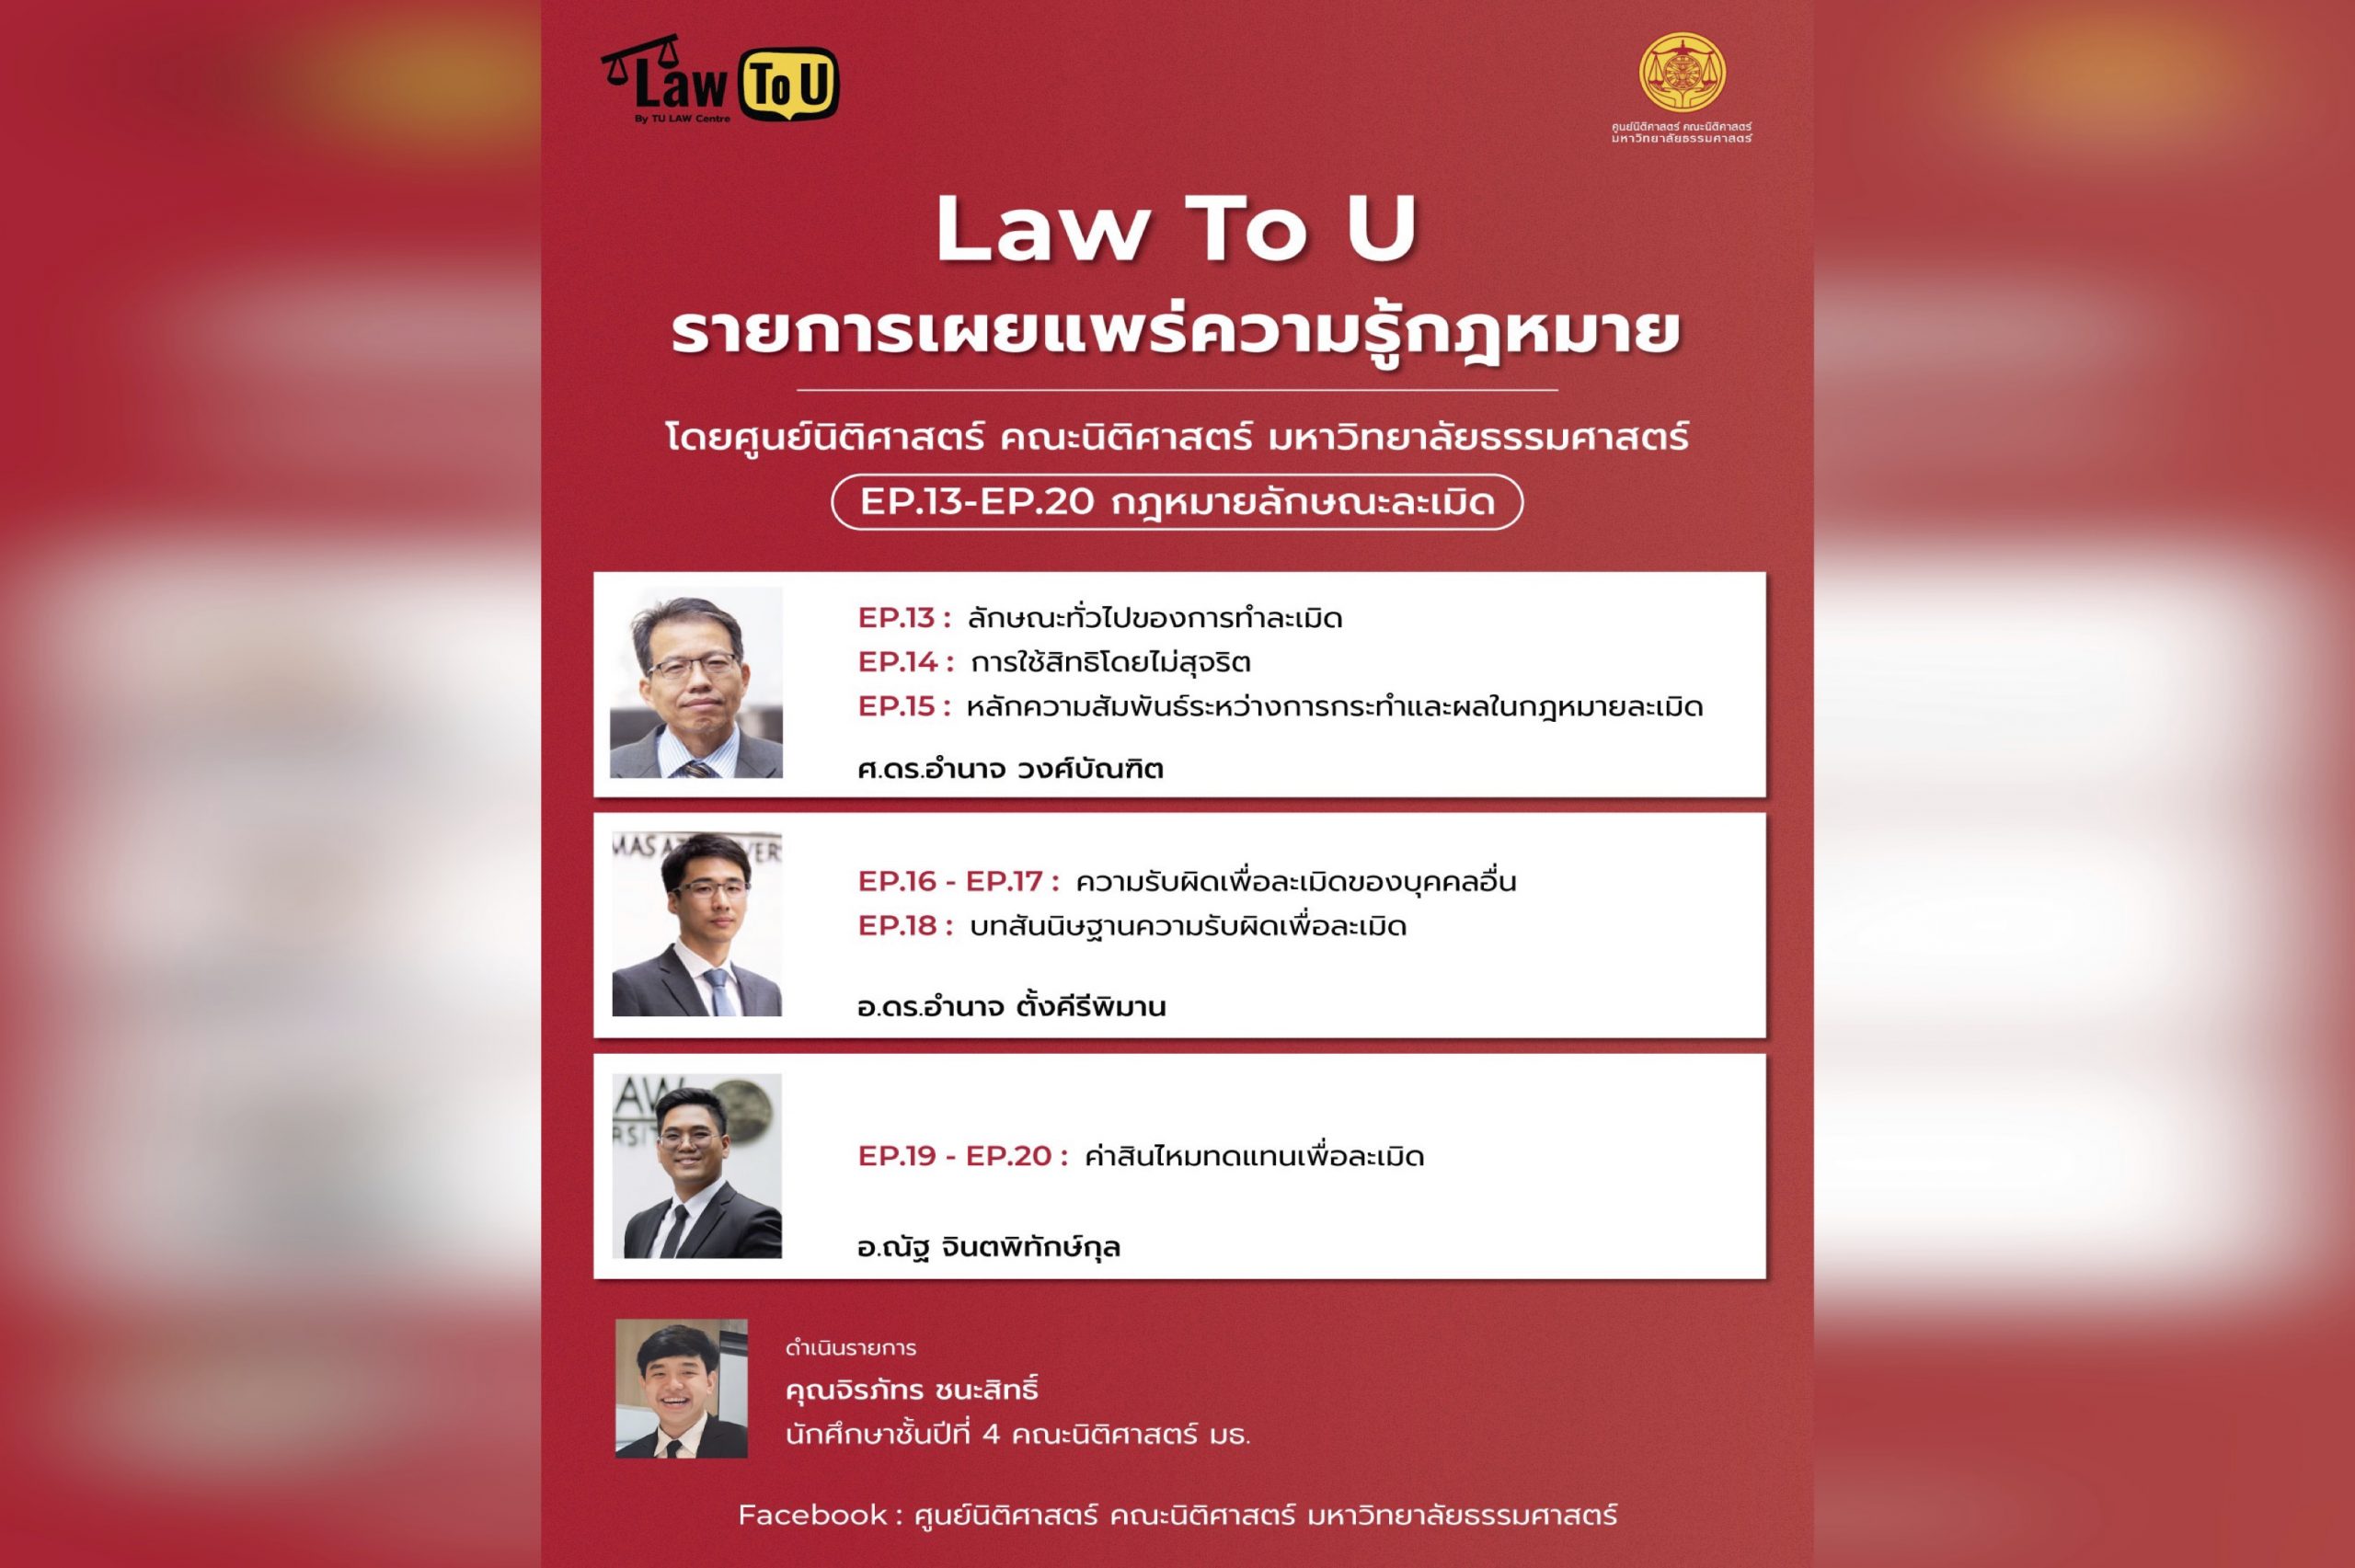 สรุปผลการดำเนินรายการ “Law To U By TU LAW Centre” รายการเผยแพร่ความรู้กฎหมายโดยศูนย์นิติศาสตร์ฯ ตอนที่ 3